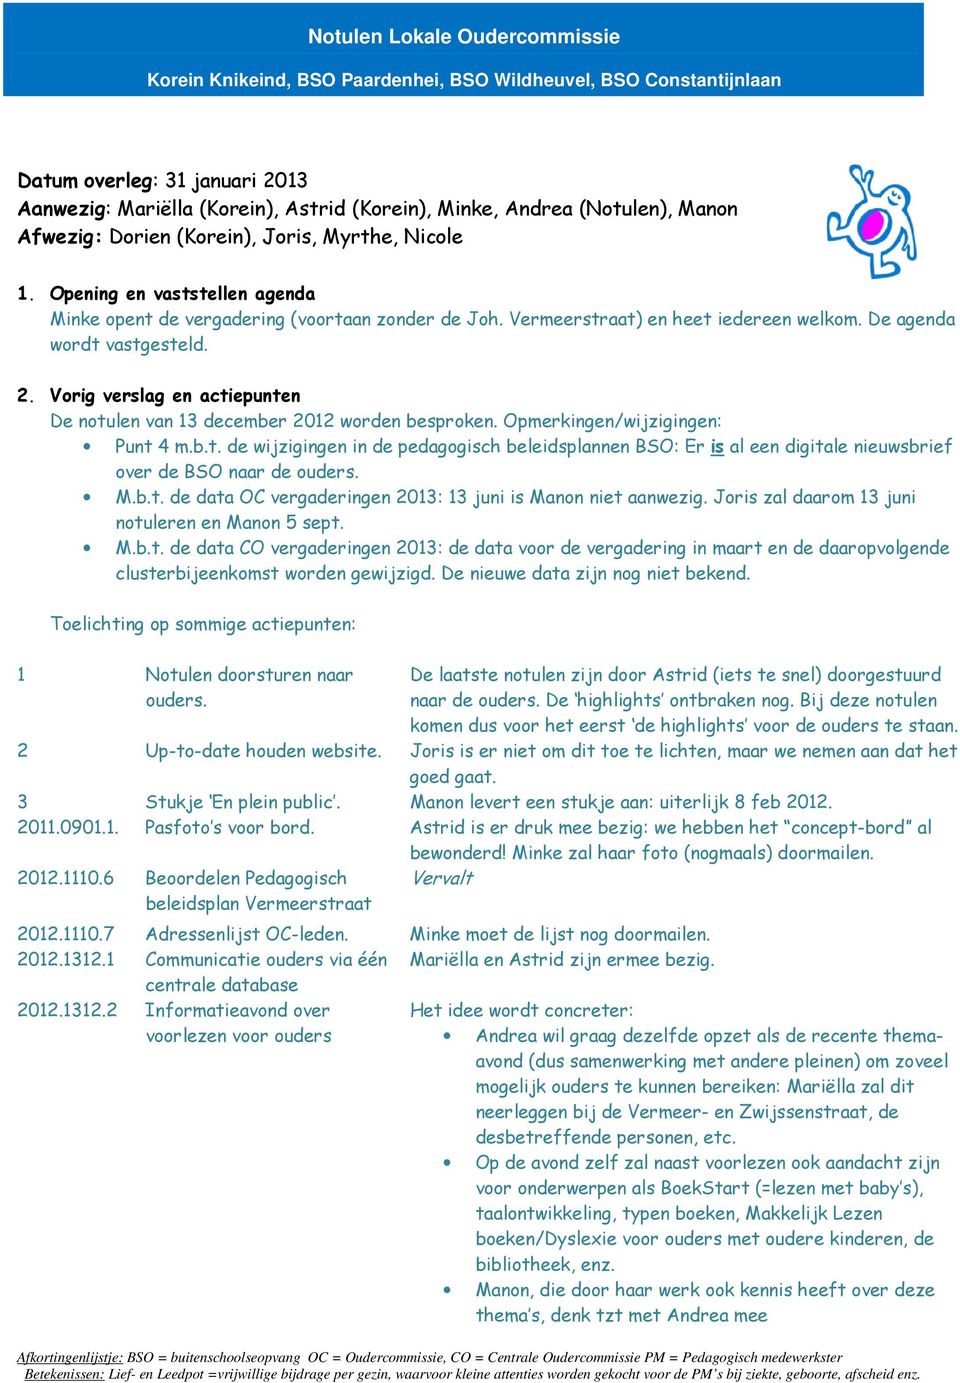 De agenda wordt vastgesteld. 2. Vorig verslag en actiepunten De notulen van 13 december 2012 worden besproken. Opmerkingen/wijzigingen: Punt 4 m.b.t. de wijzigingen in de pedagogisch beleidsplannen BSO: Er is al een digitale nieuwsbrief over de BSO naar de ouders.